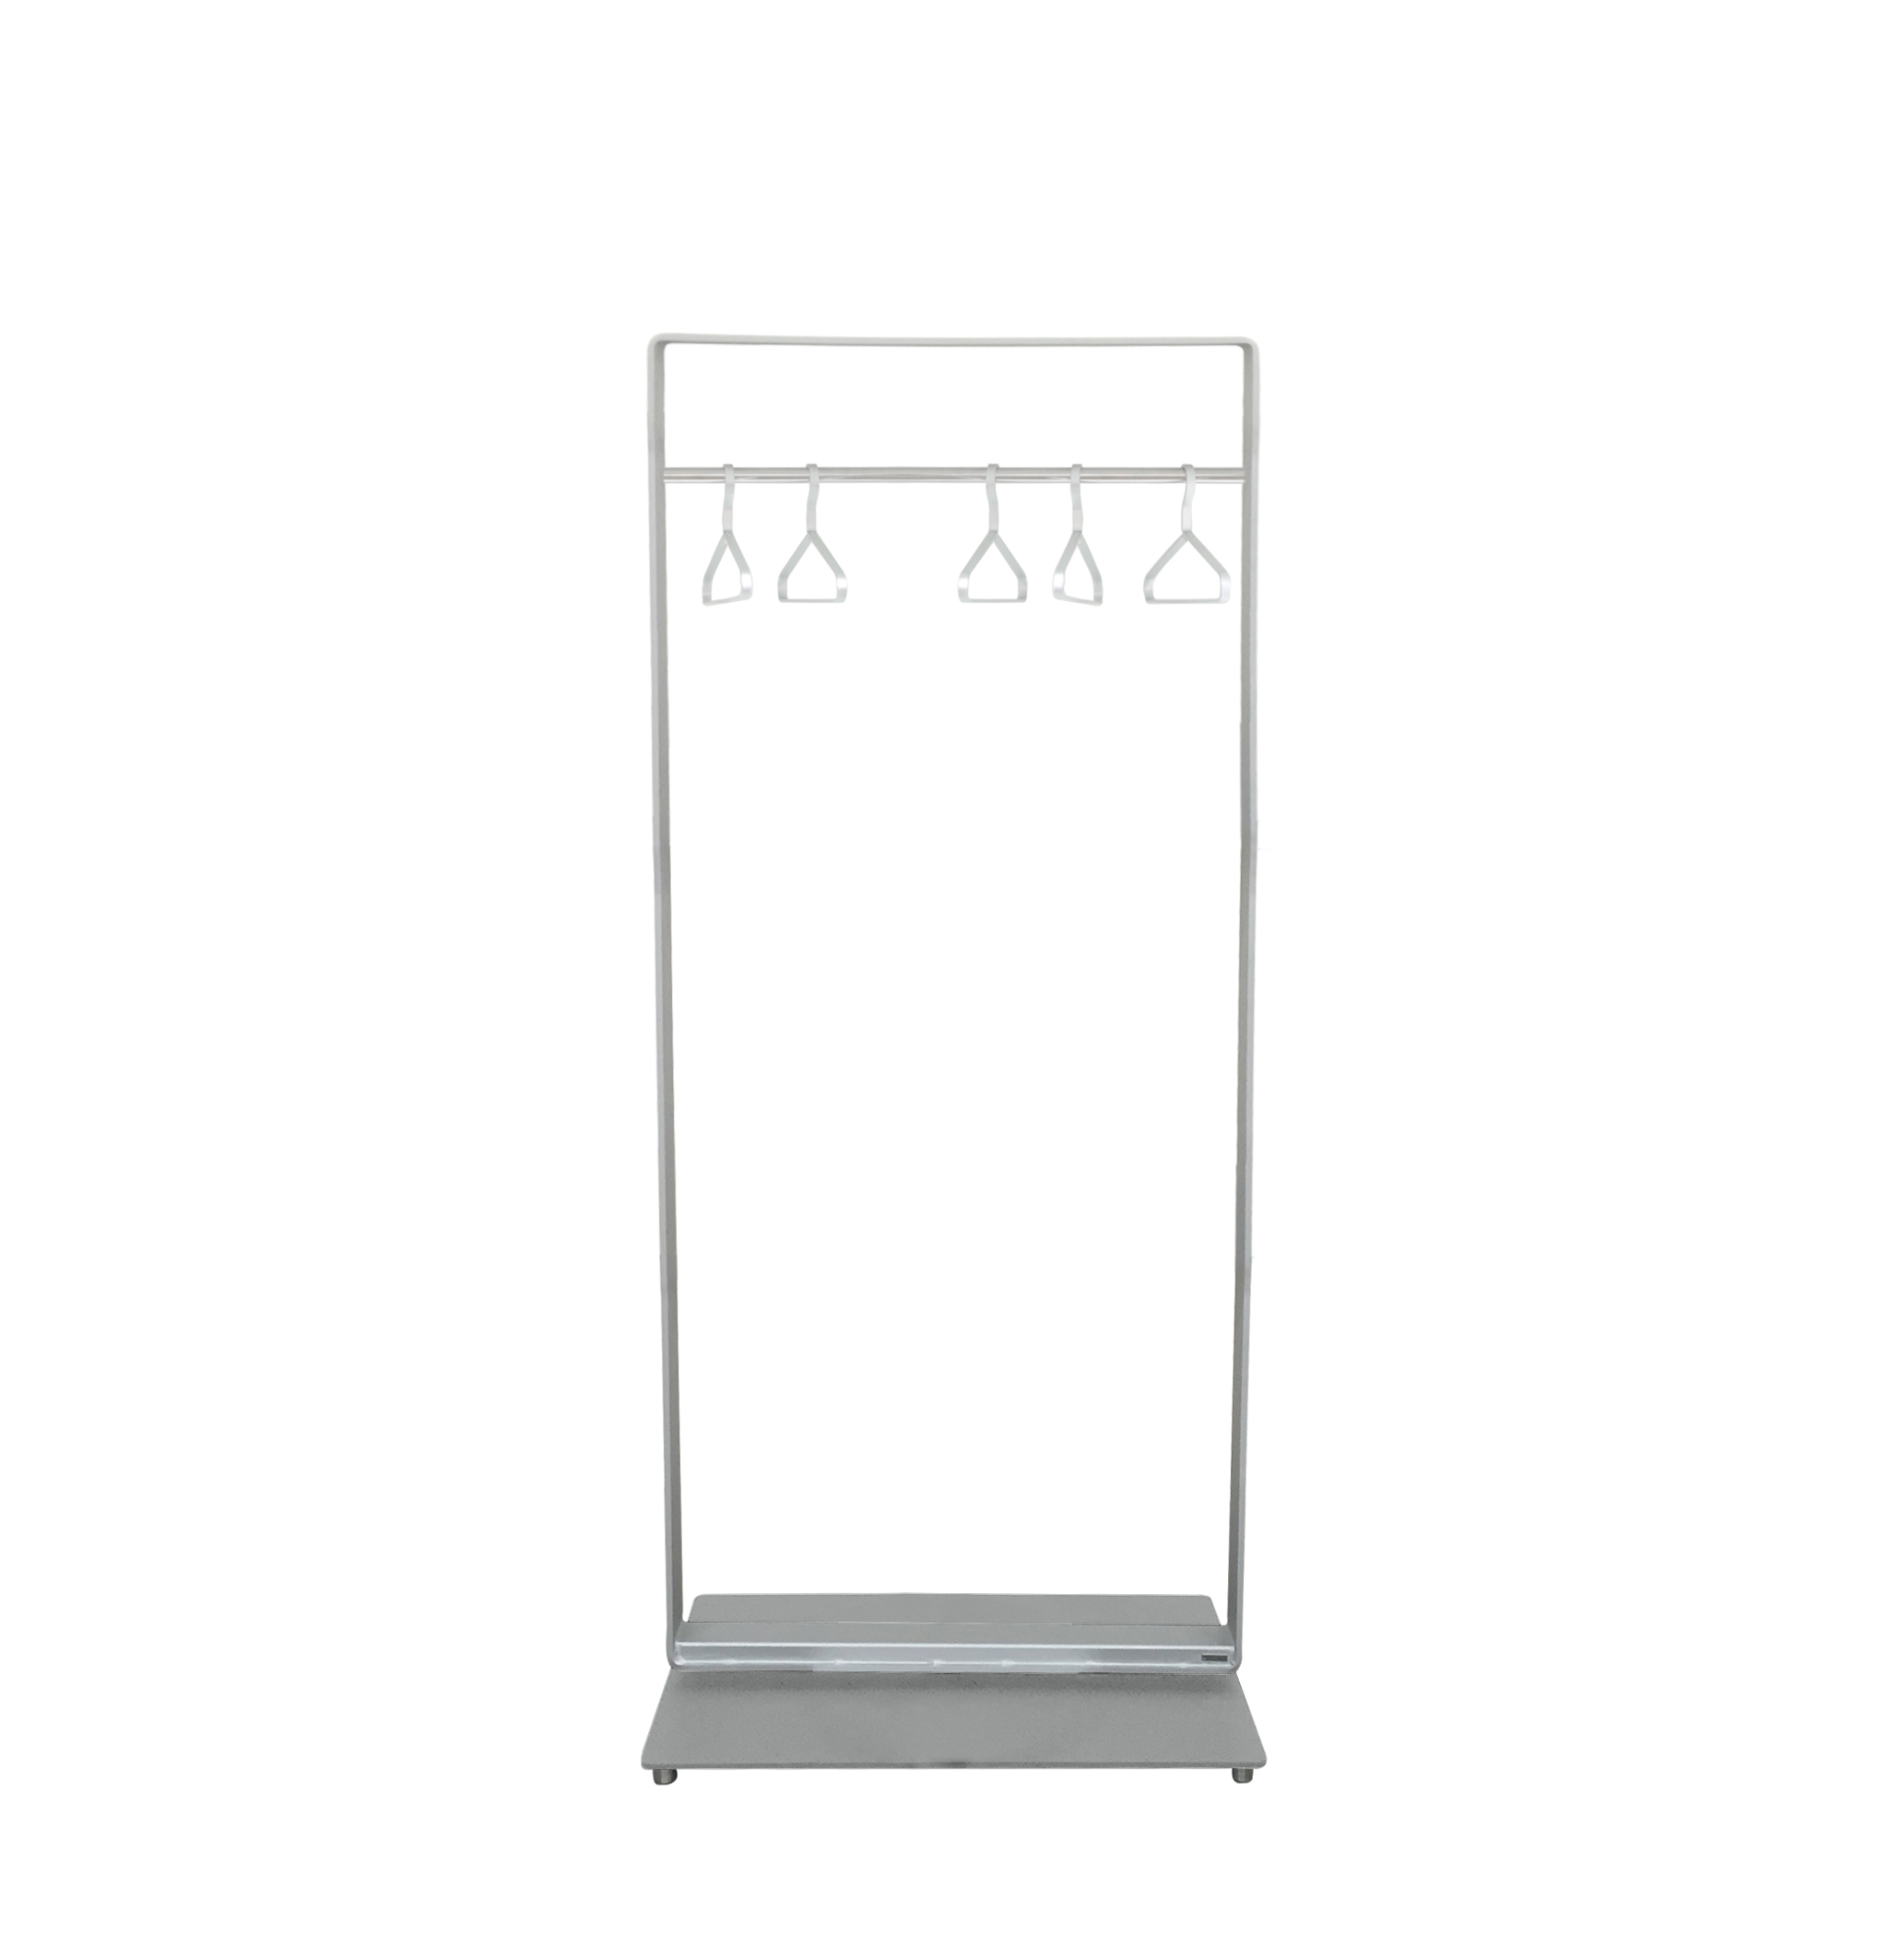 Wissmann Design Stand-Garderobe frame art589